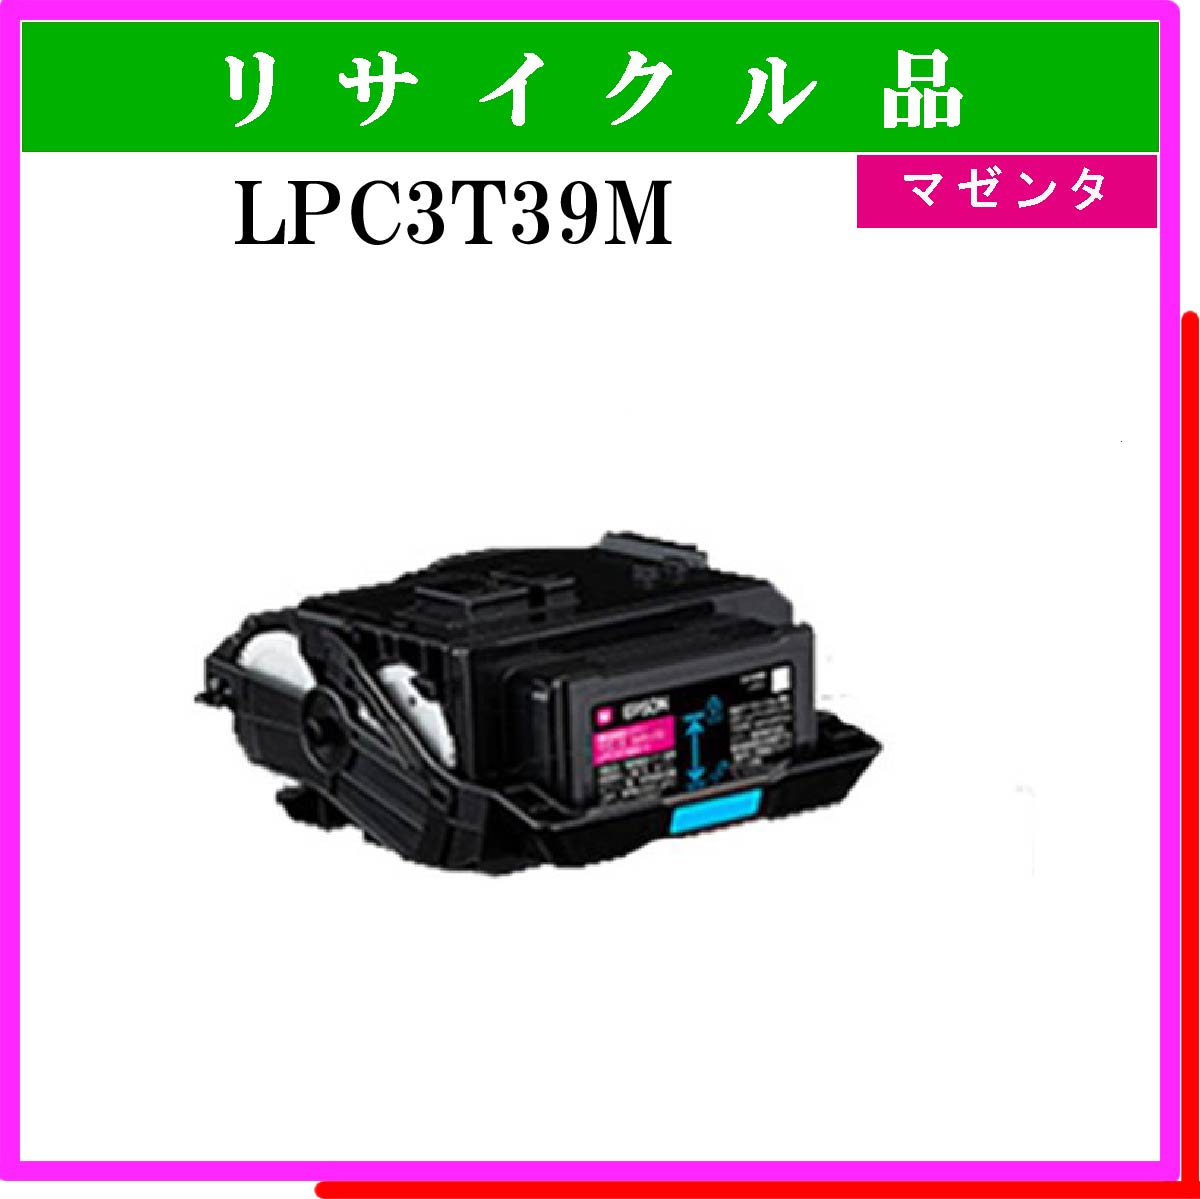 LPC3T39M